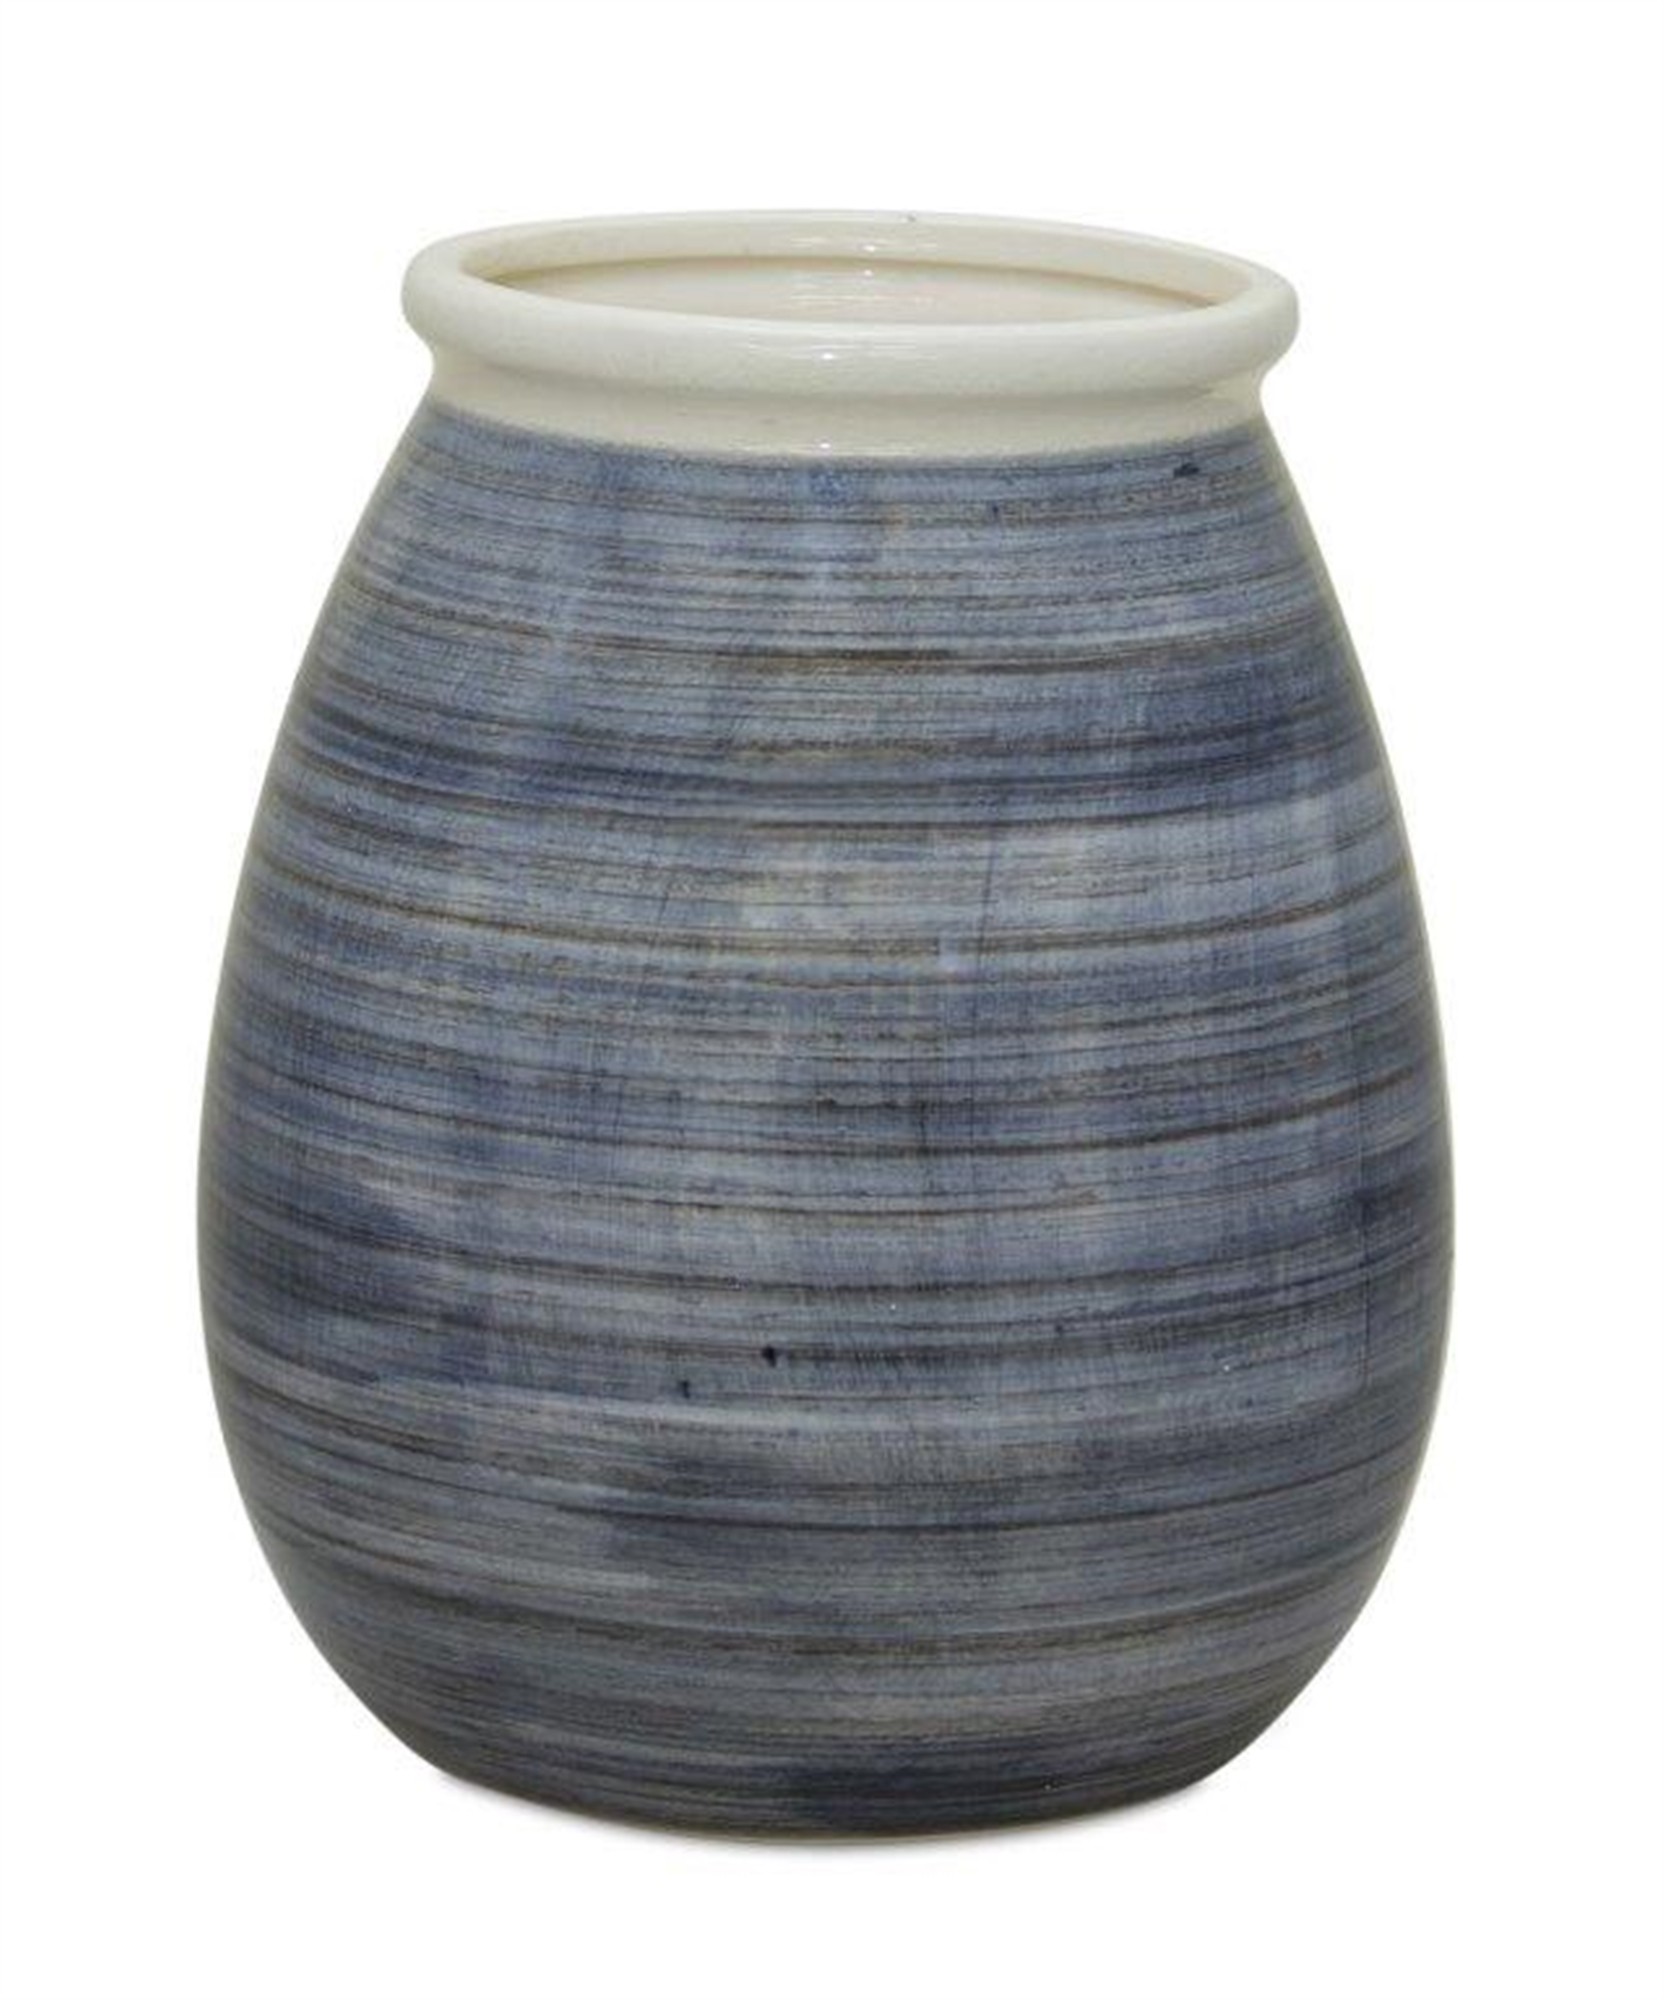 Vase 7.25"D x 9.5"H Terra Cotta